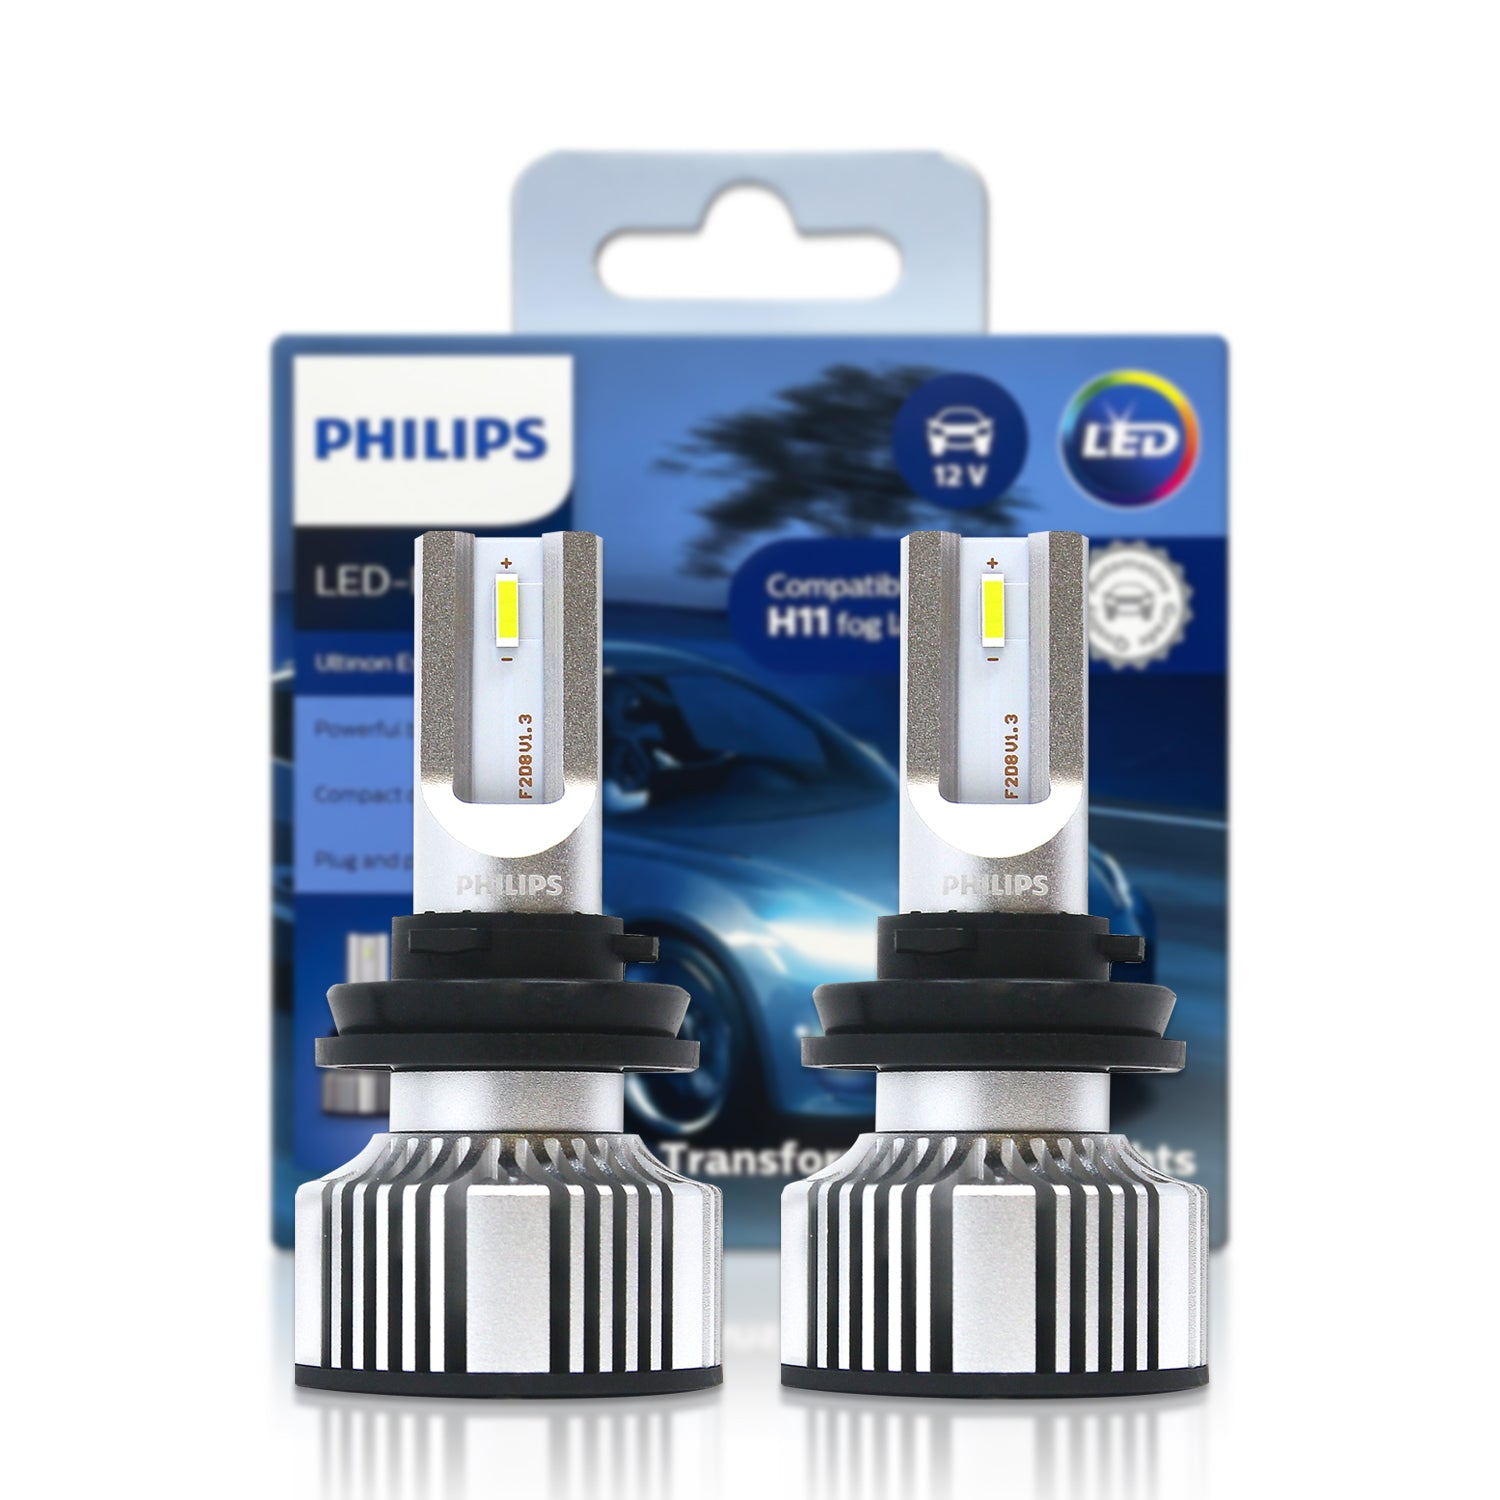 H11: Philips 11362UE2X2 Fog LED Bulbs – HID CONCEPT